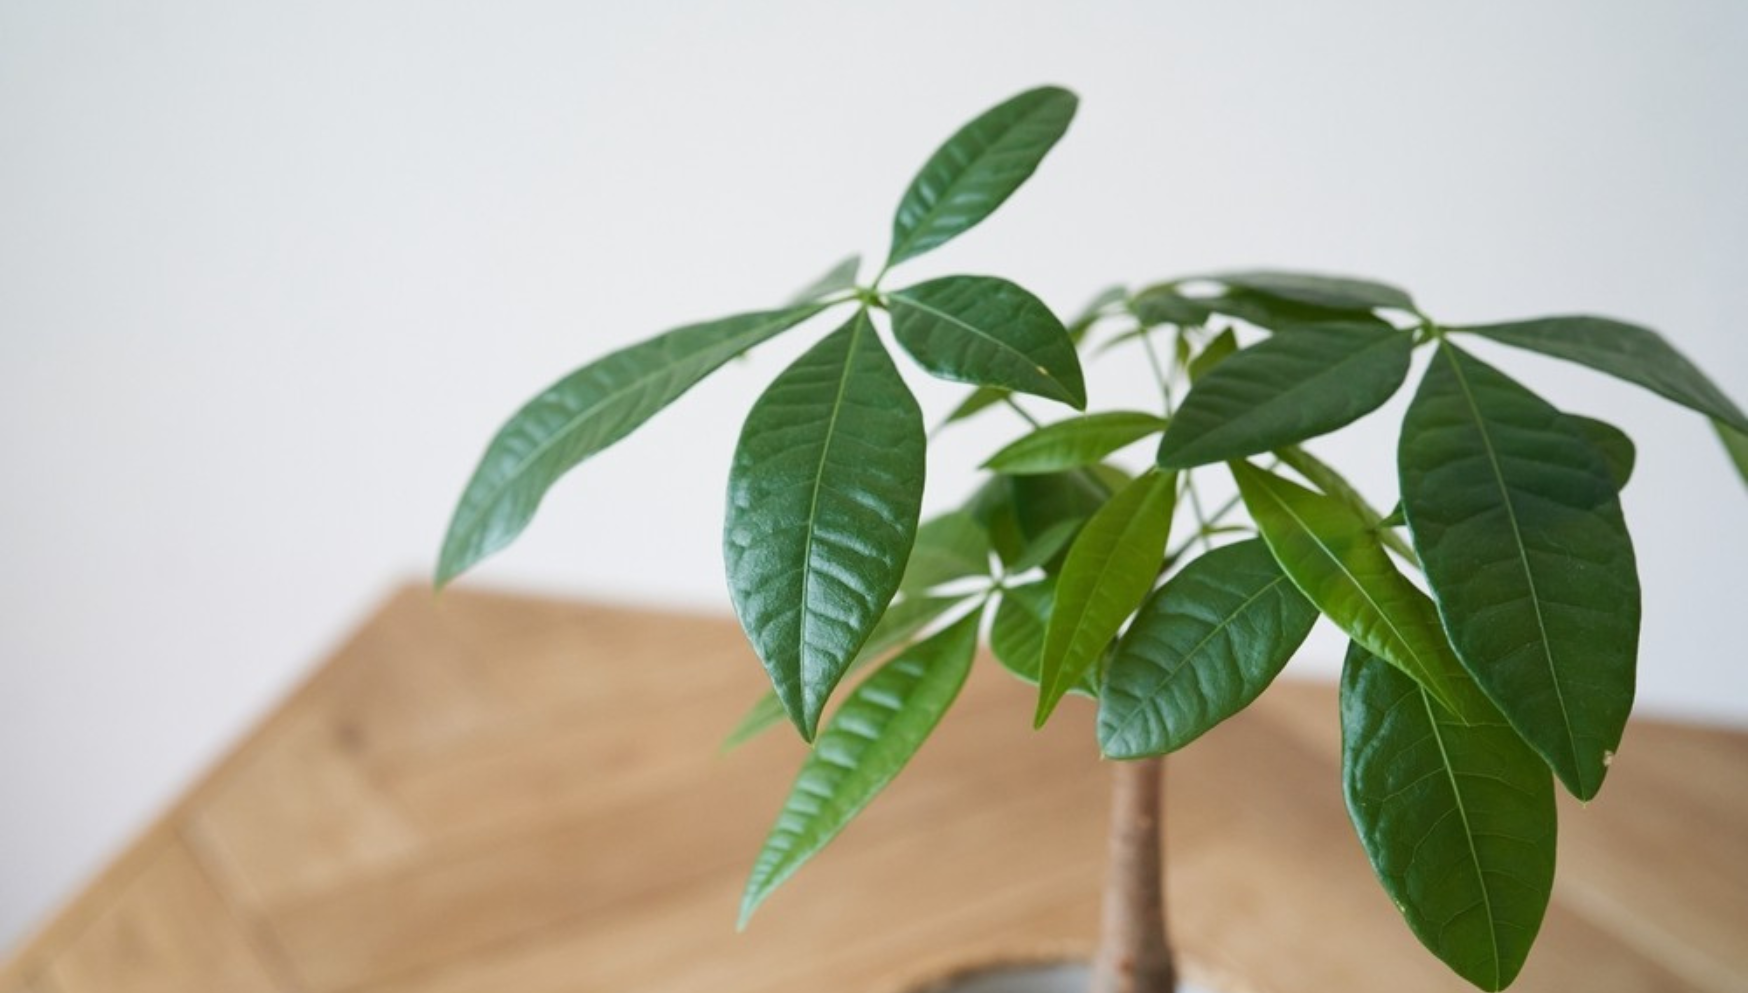 Pachira plant